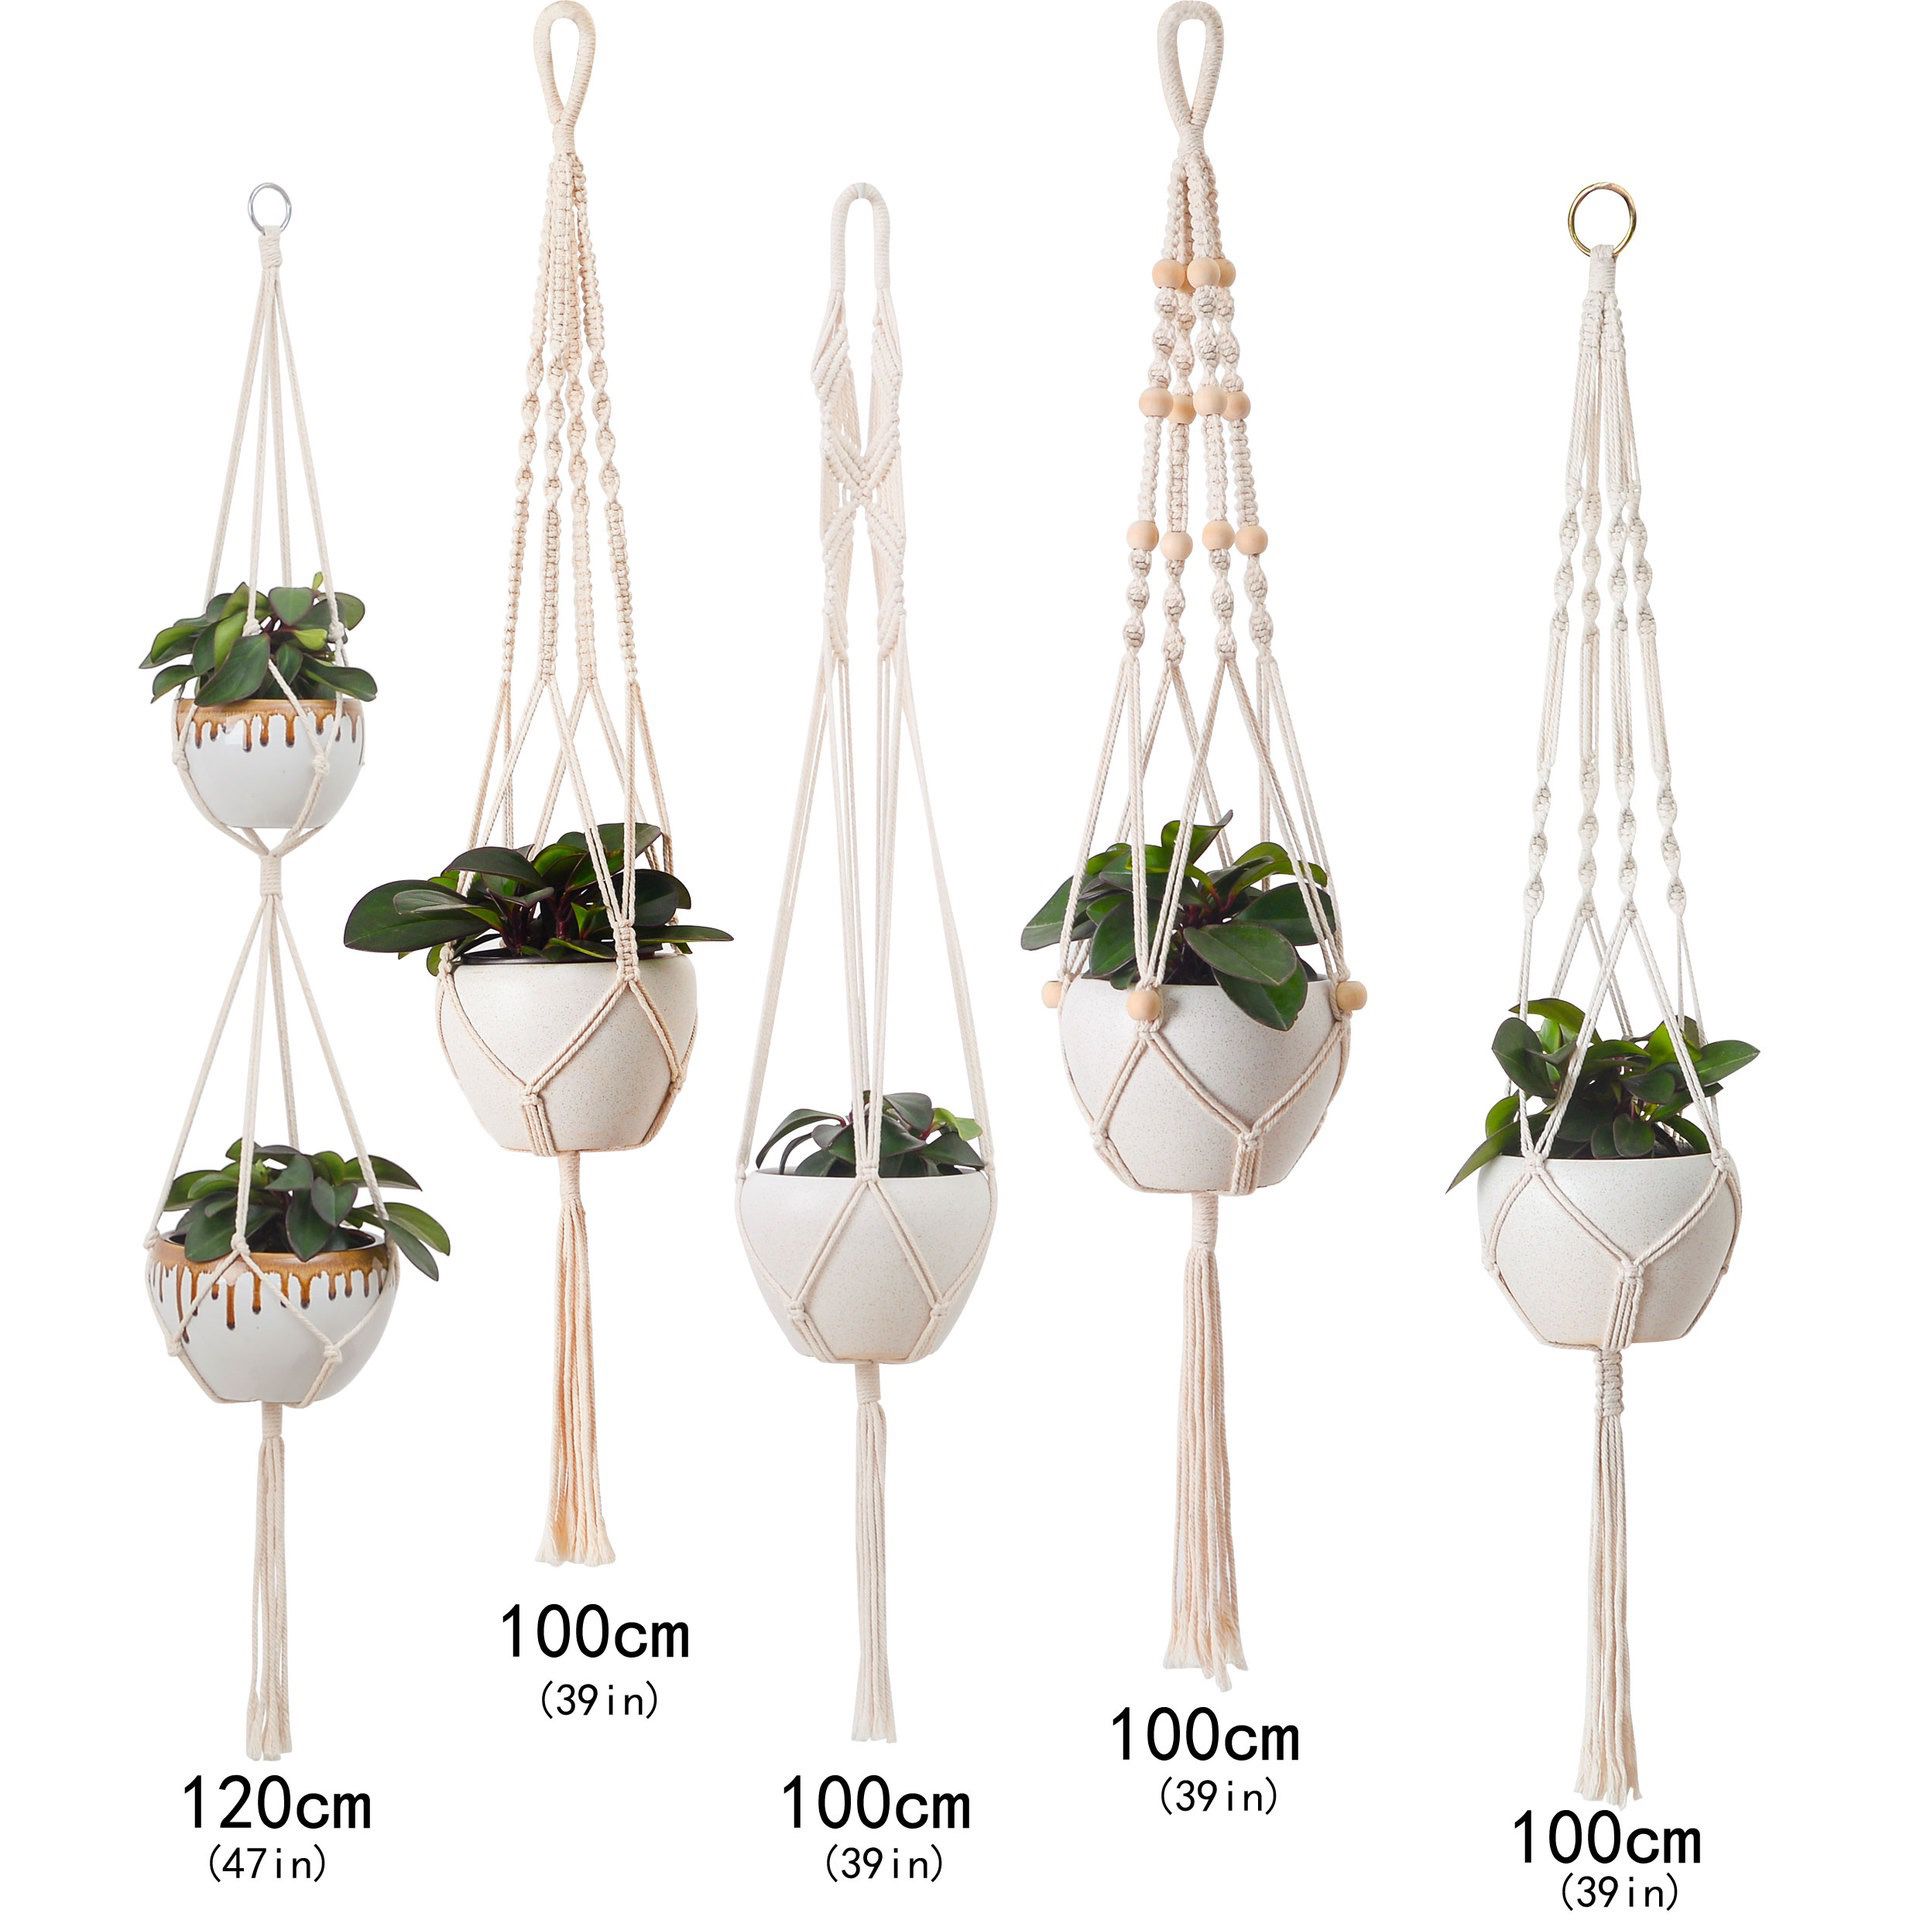 5 Set Macrame Plant Hanger Garden Flower Pot Holder Hanging Planter Basket Indoor Decor